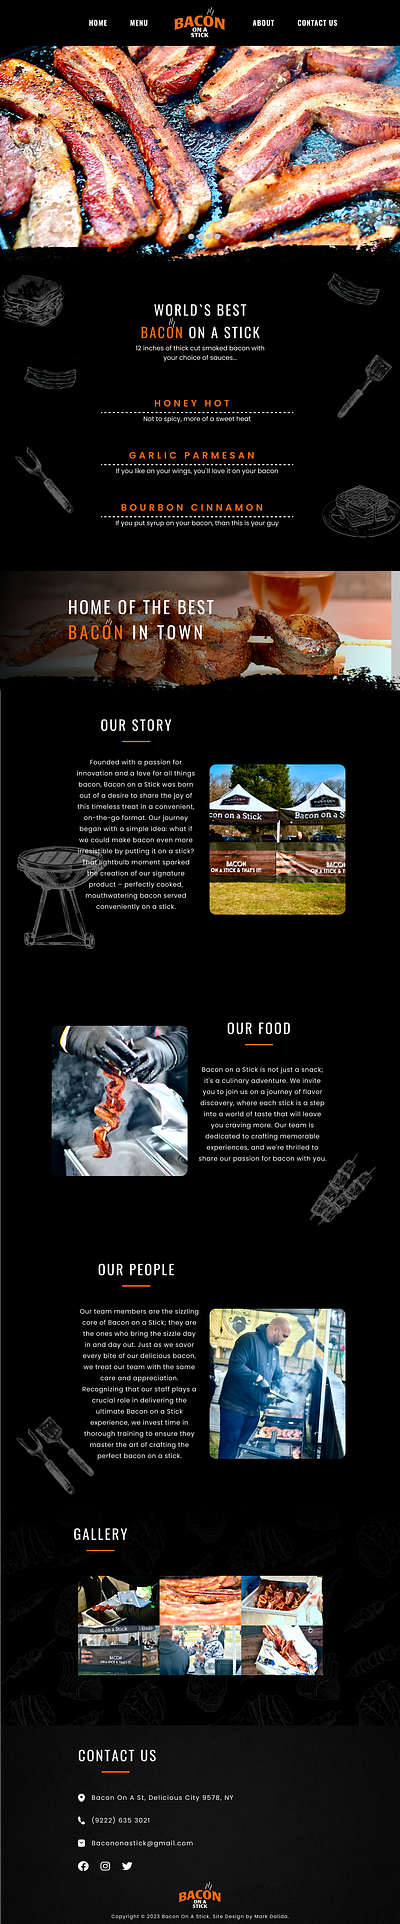 Bacon On a Stick Website food landing page logo ui design ux design